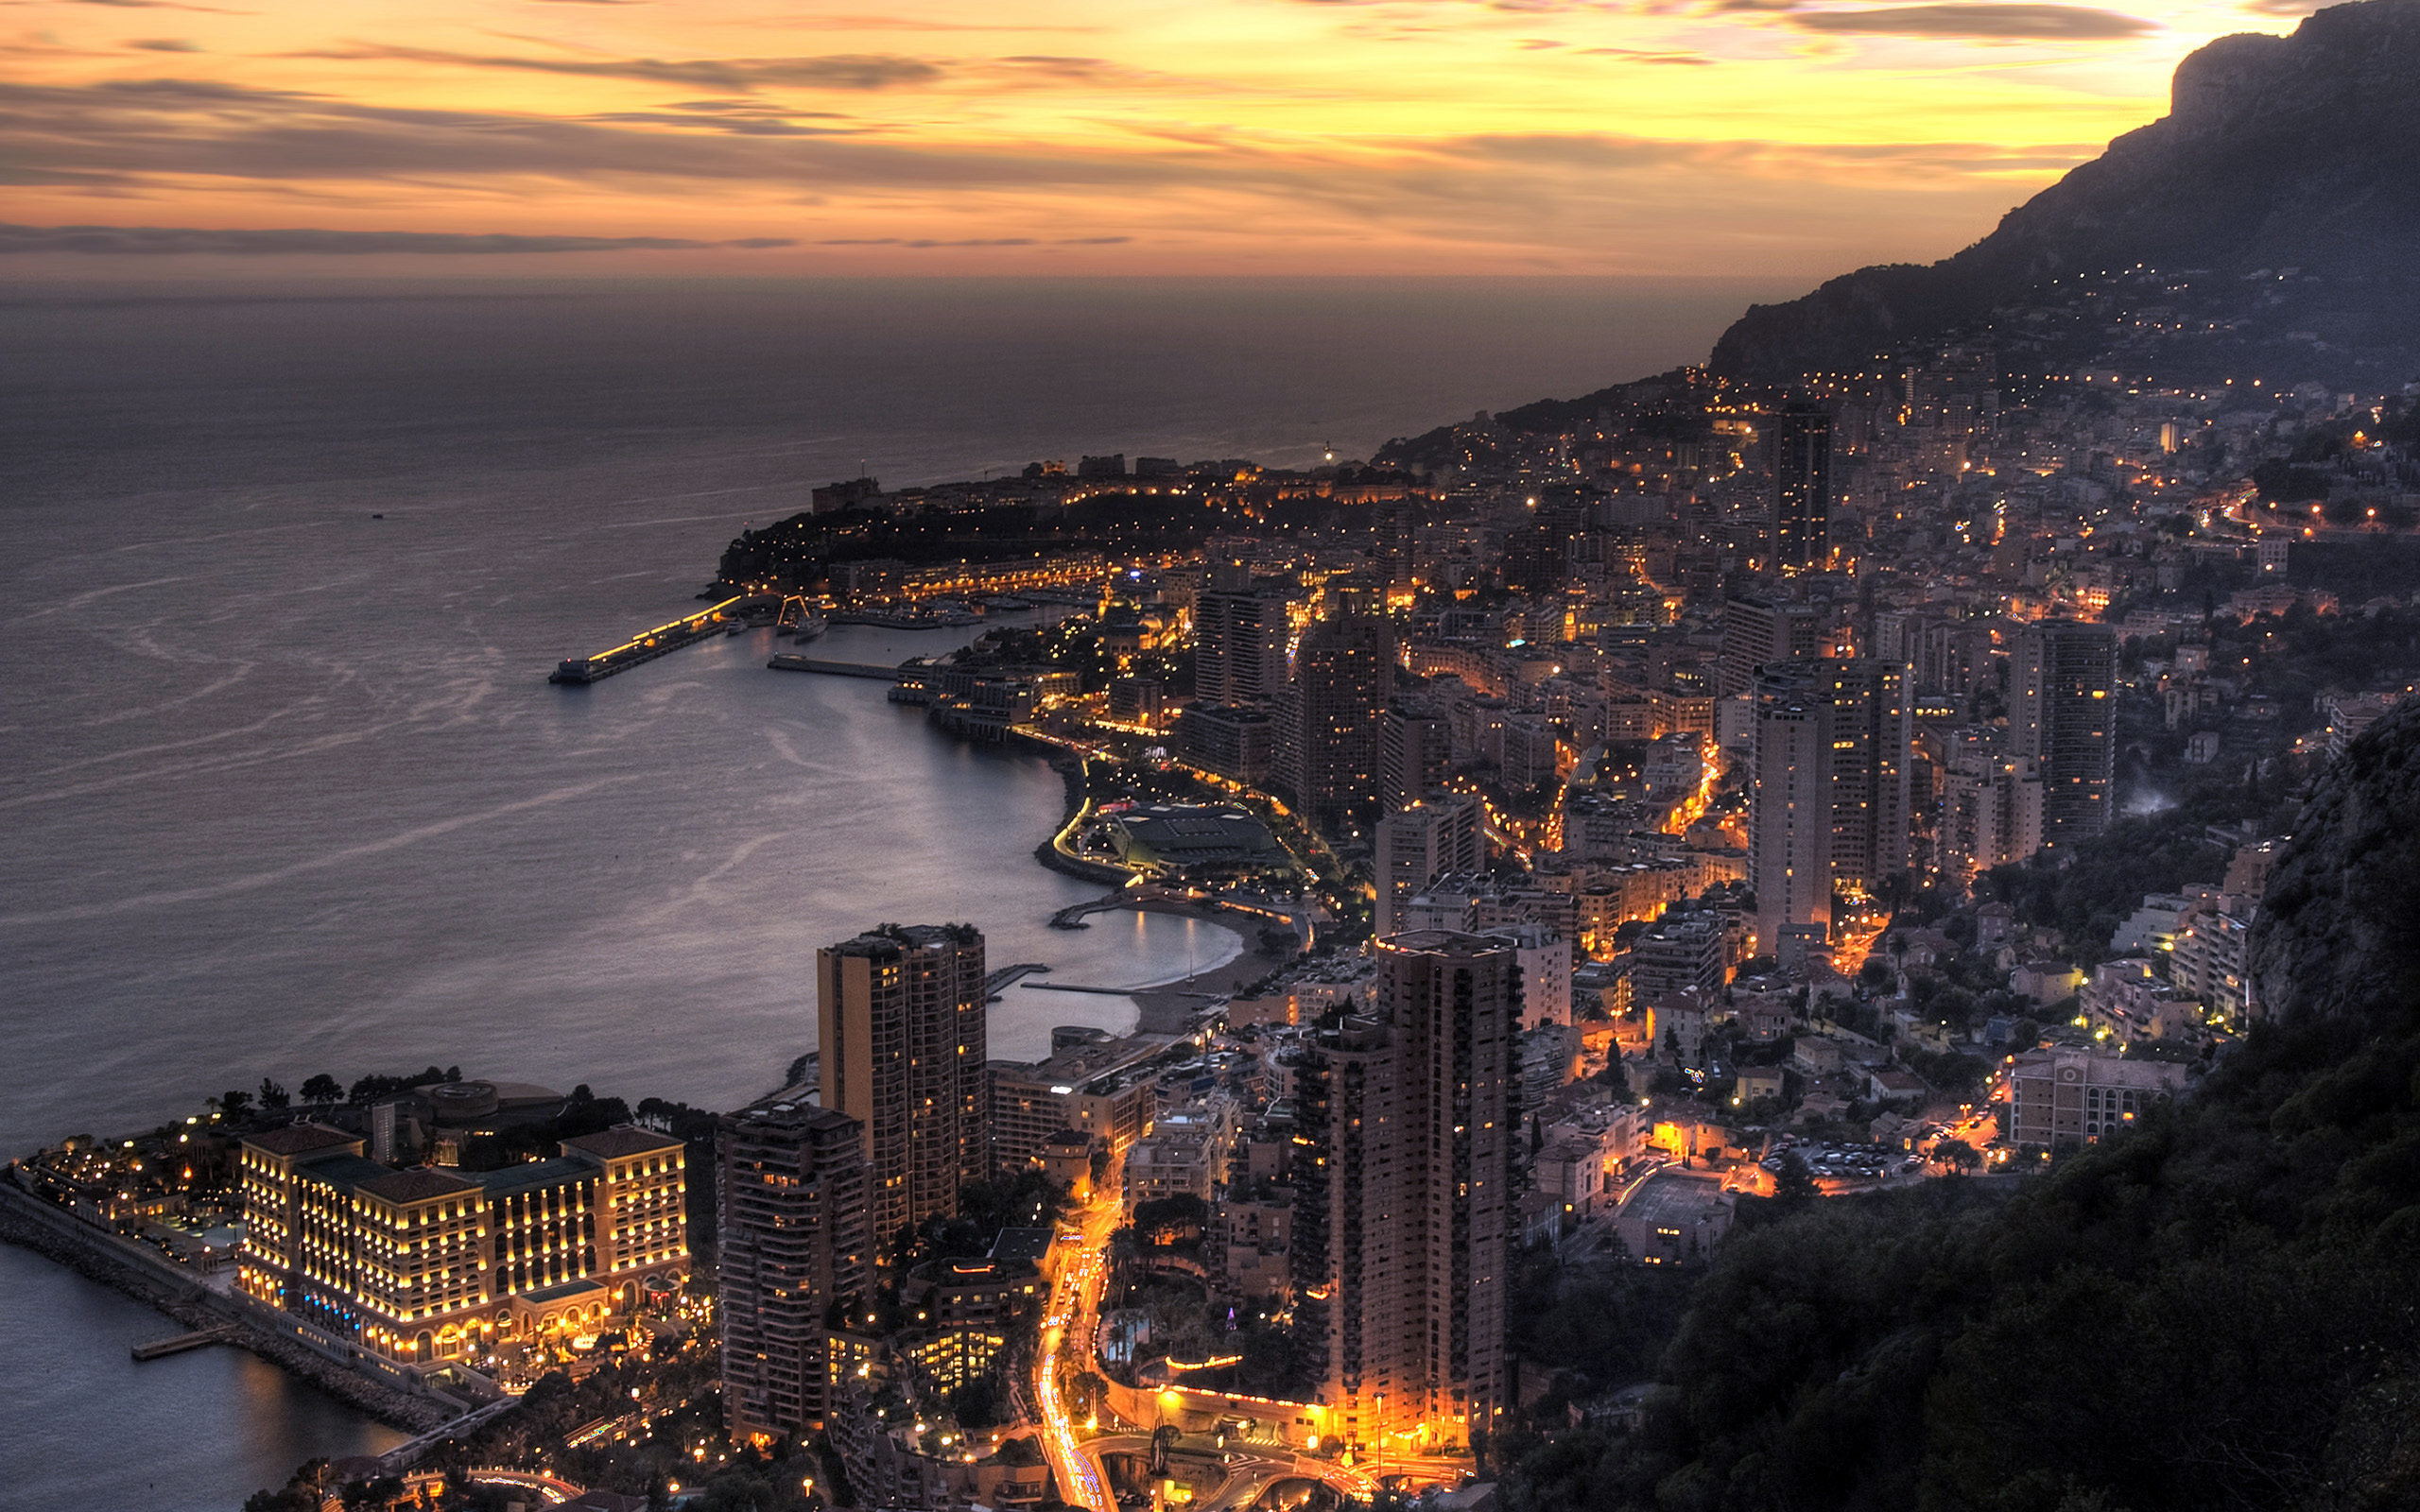 Coastline view of Monte Carlo city at dusk, overlooking the Mediterranean Sea in Monaco.